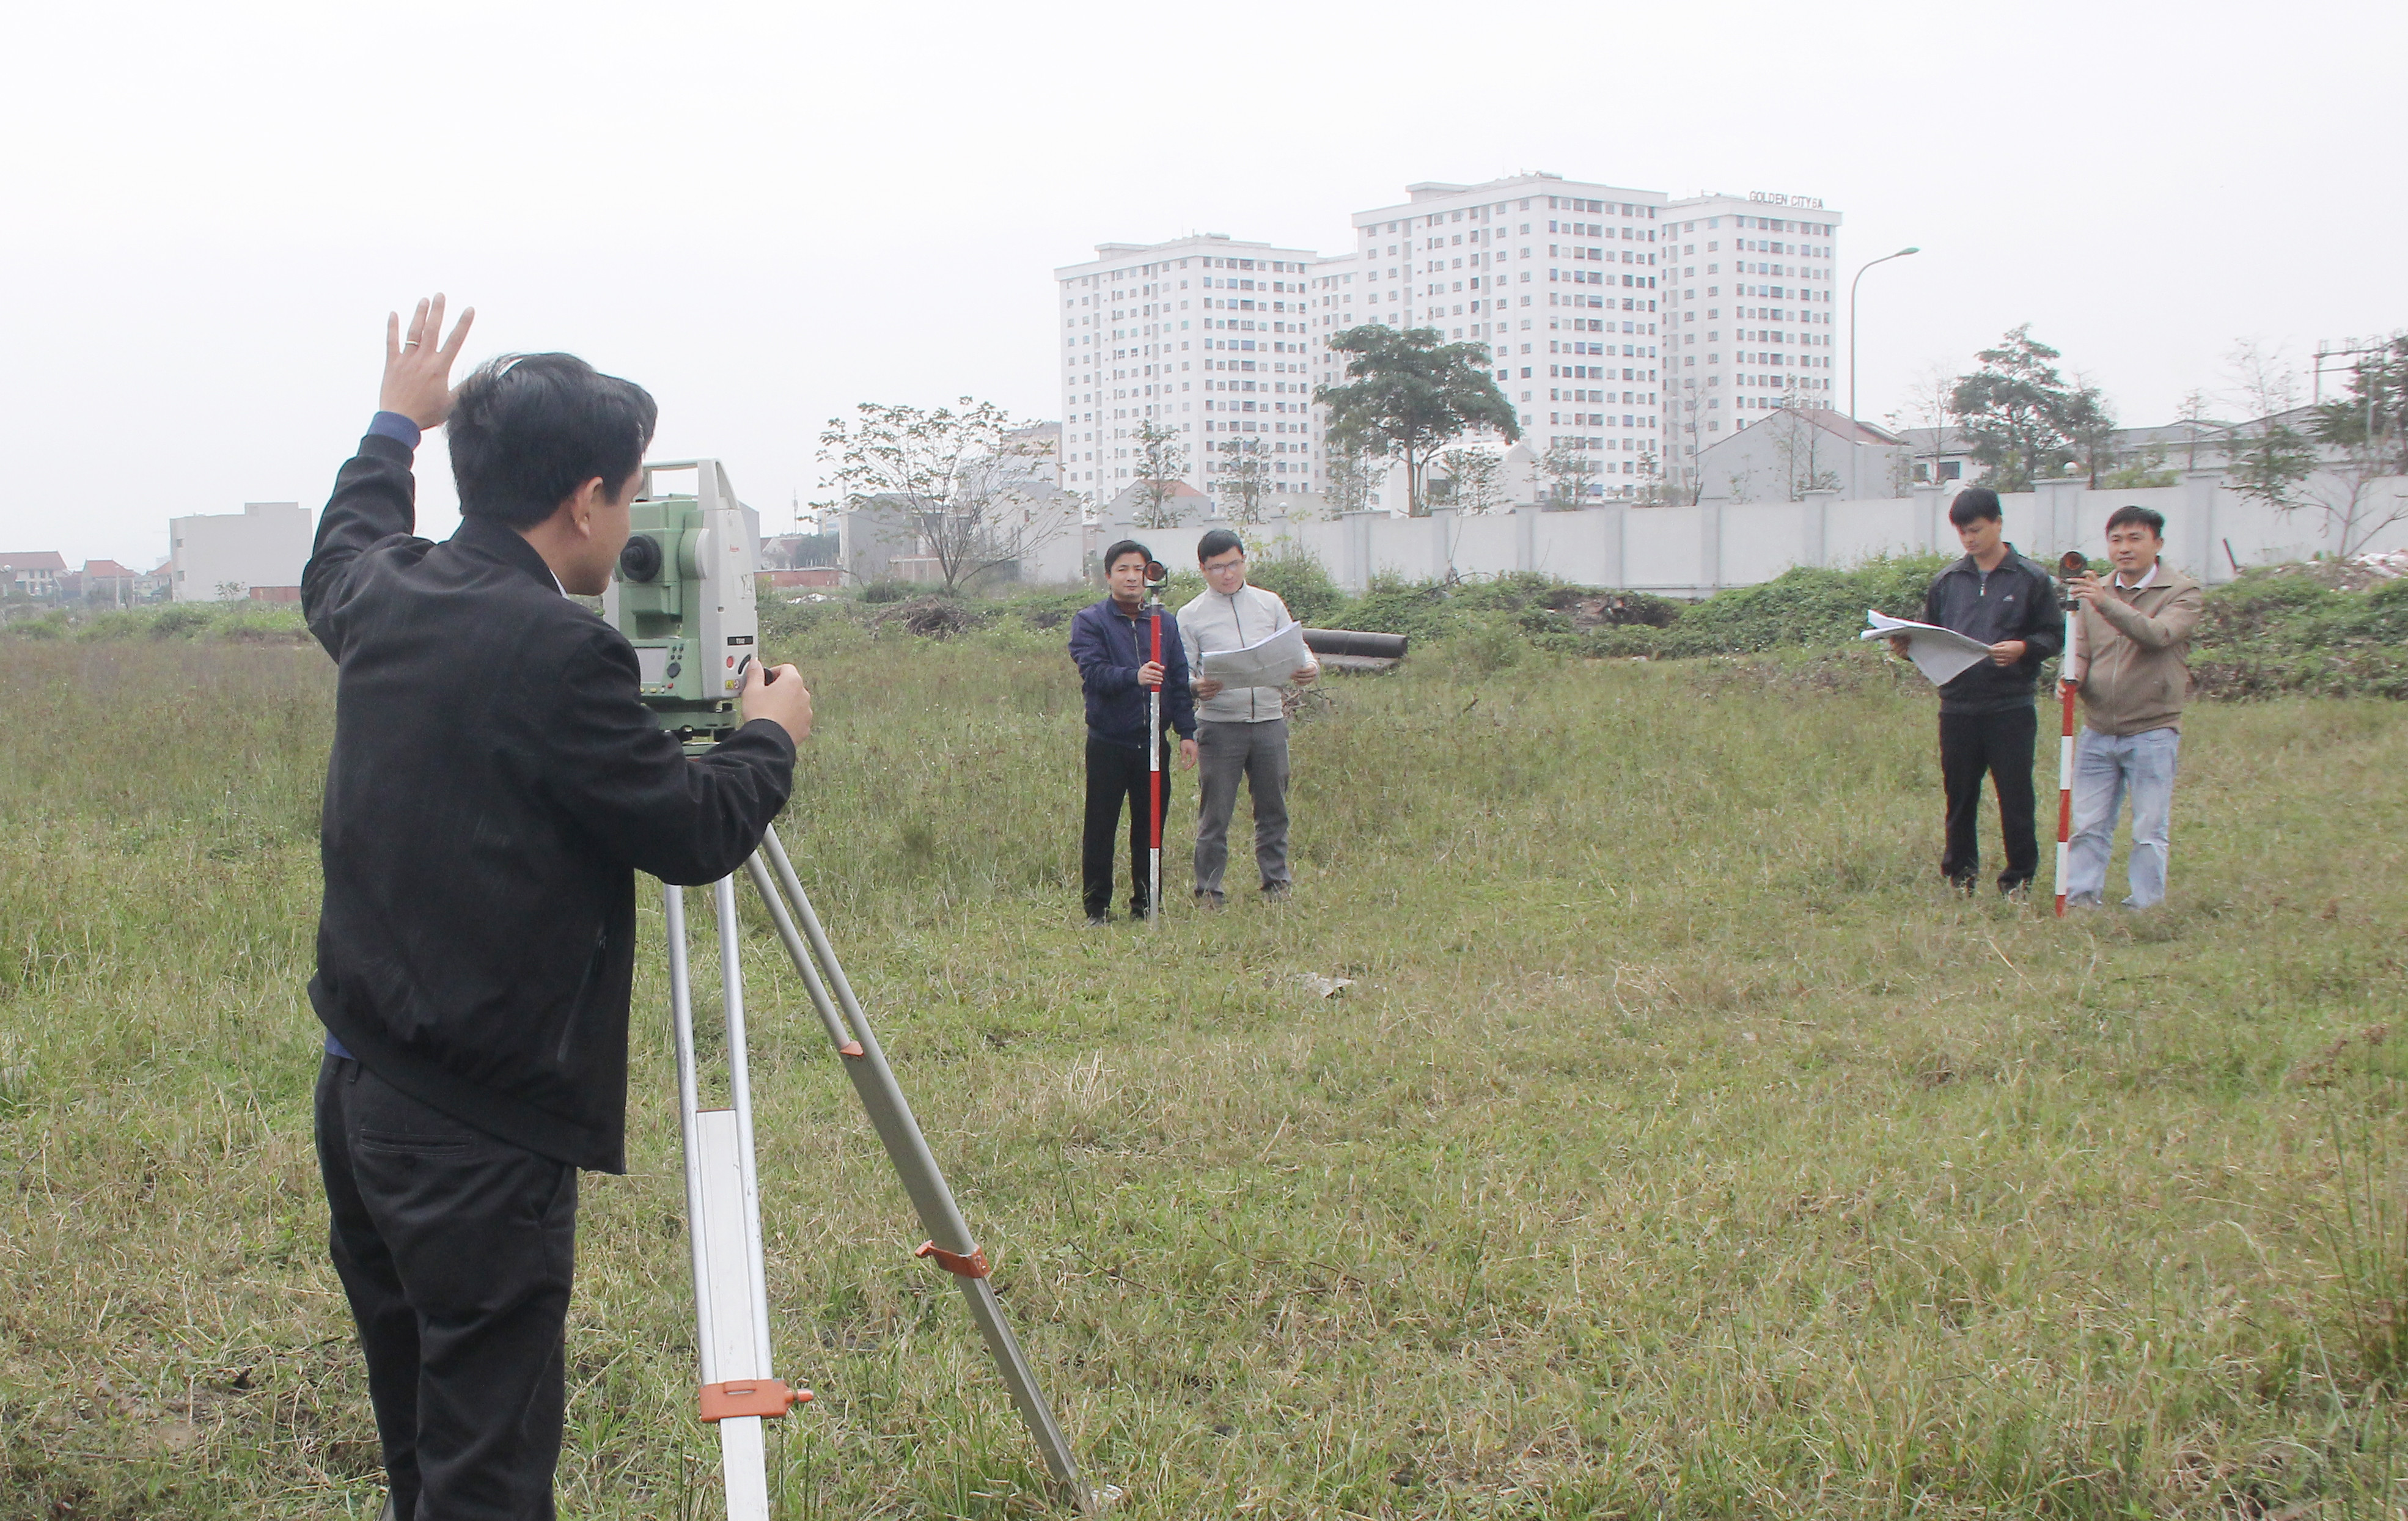 Cán bộ ngành Tài Nguyên và Môi trường triển khai đo đạc chỉnh lý bản đồ địa chính phục vụ GPMB, giao đất, cấp GCN dự án trọng điểm. Ảnh: Mai Hoa